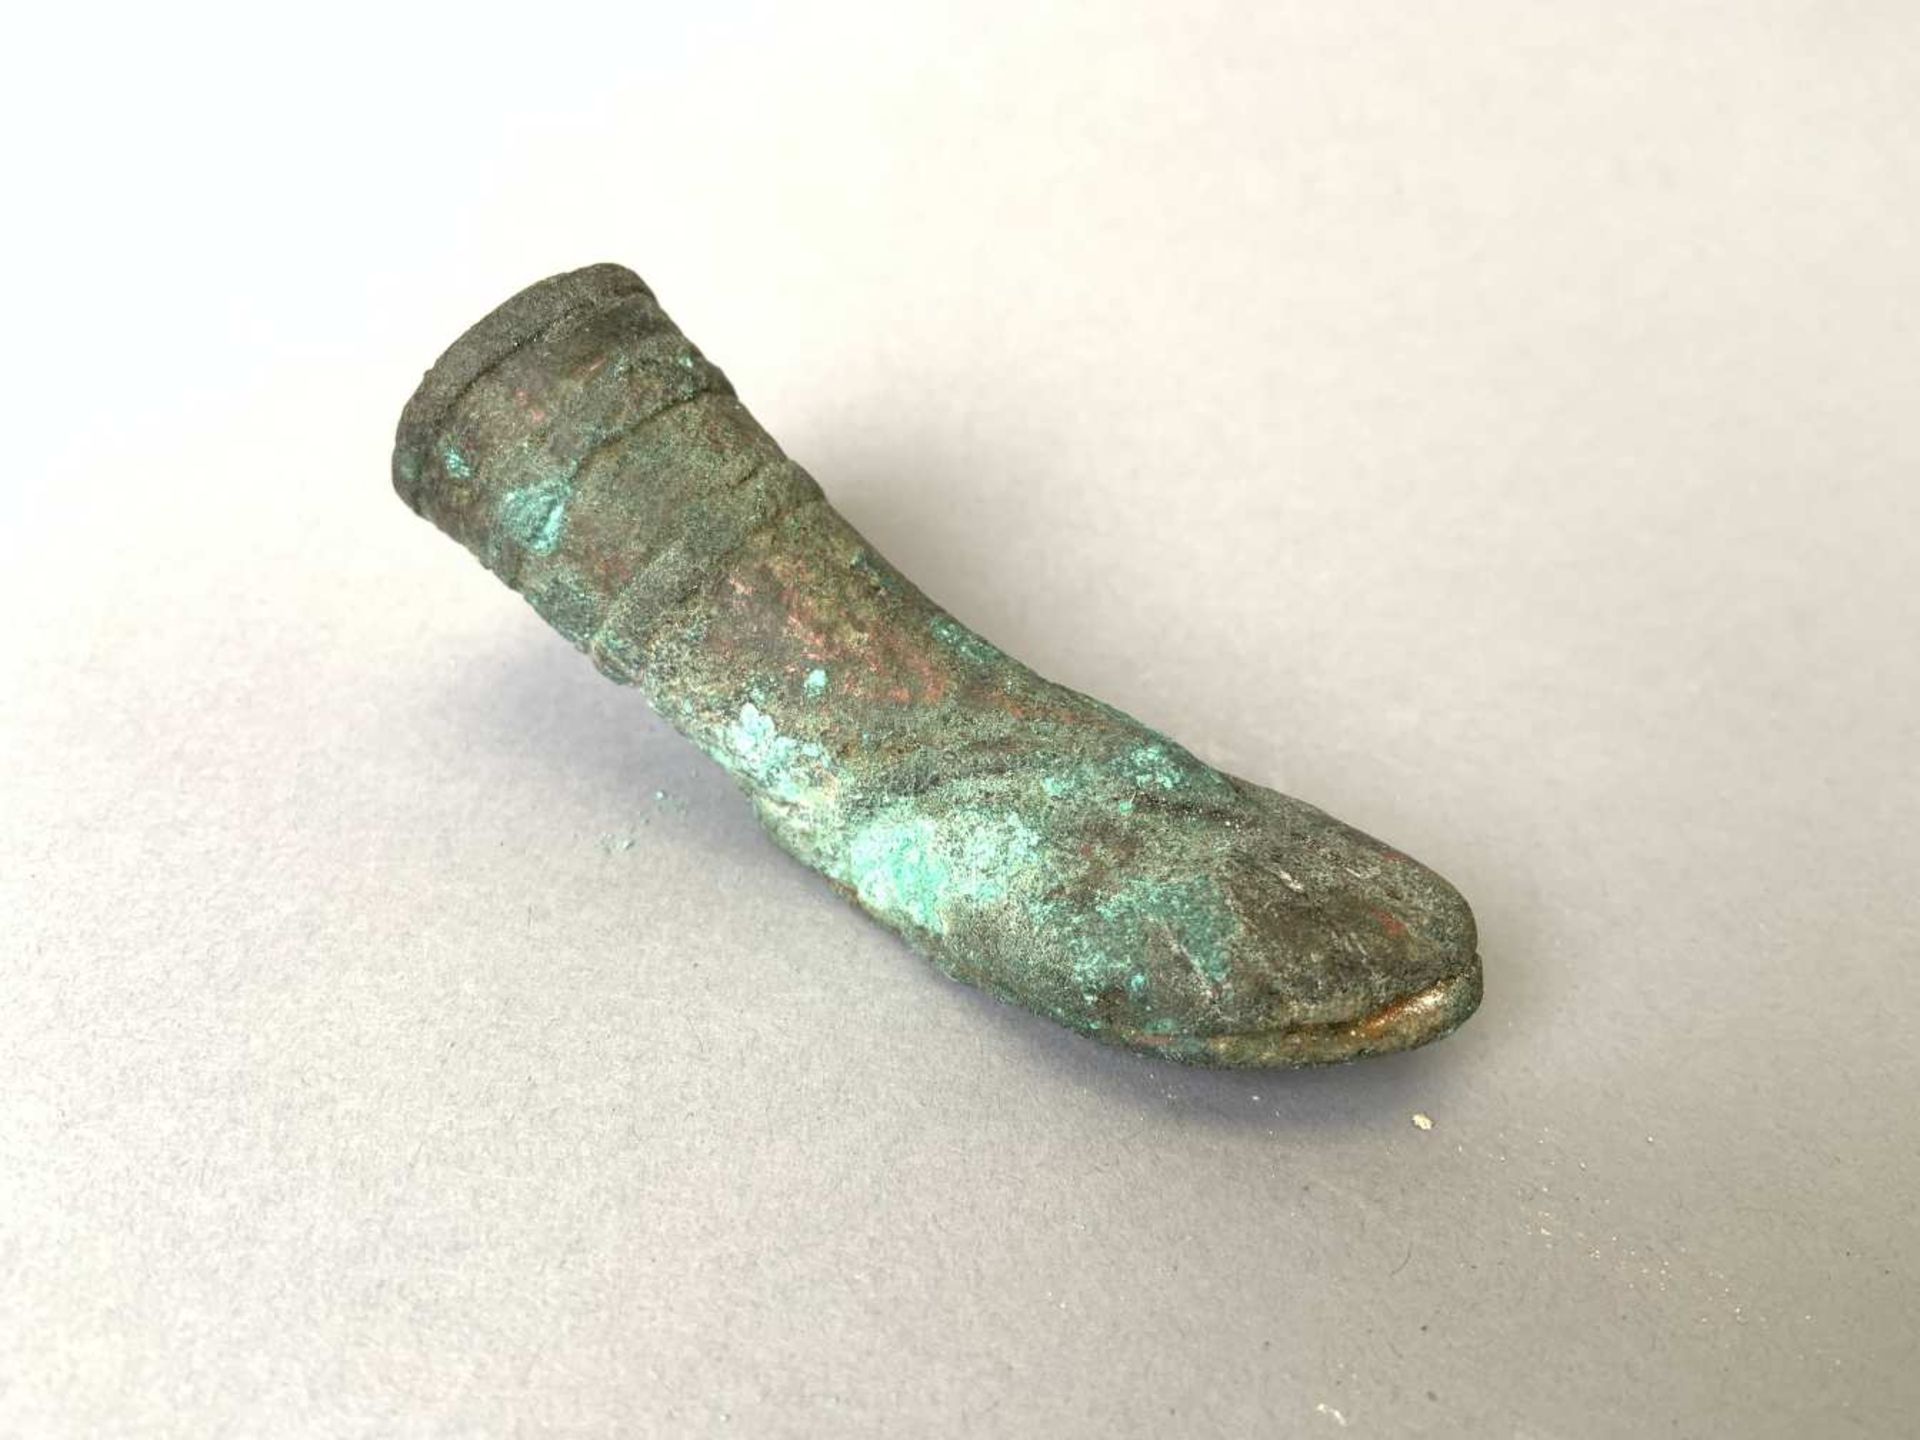 Pied en bronze revêtu d'une sandale. Longueur 10 cm. Epoque romaine.